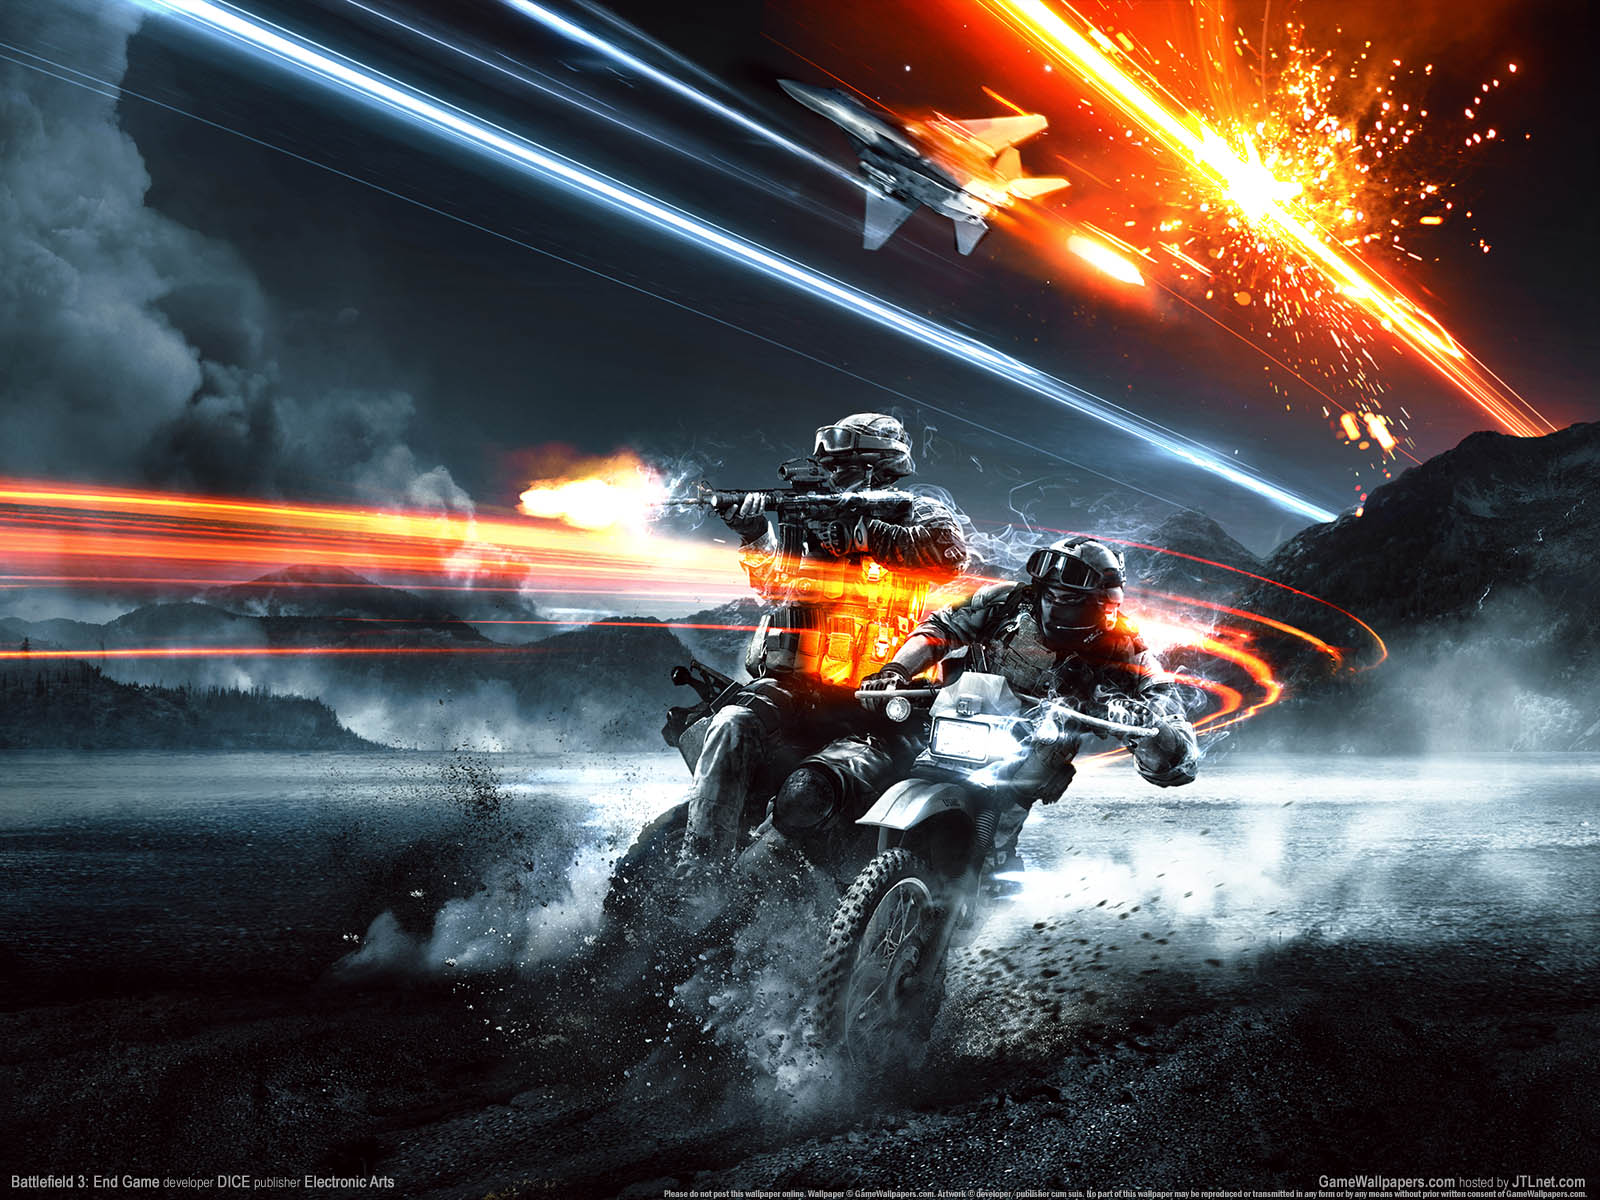 Battlefield 3%3A End Game fond d'cran 01 1600x1200